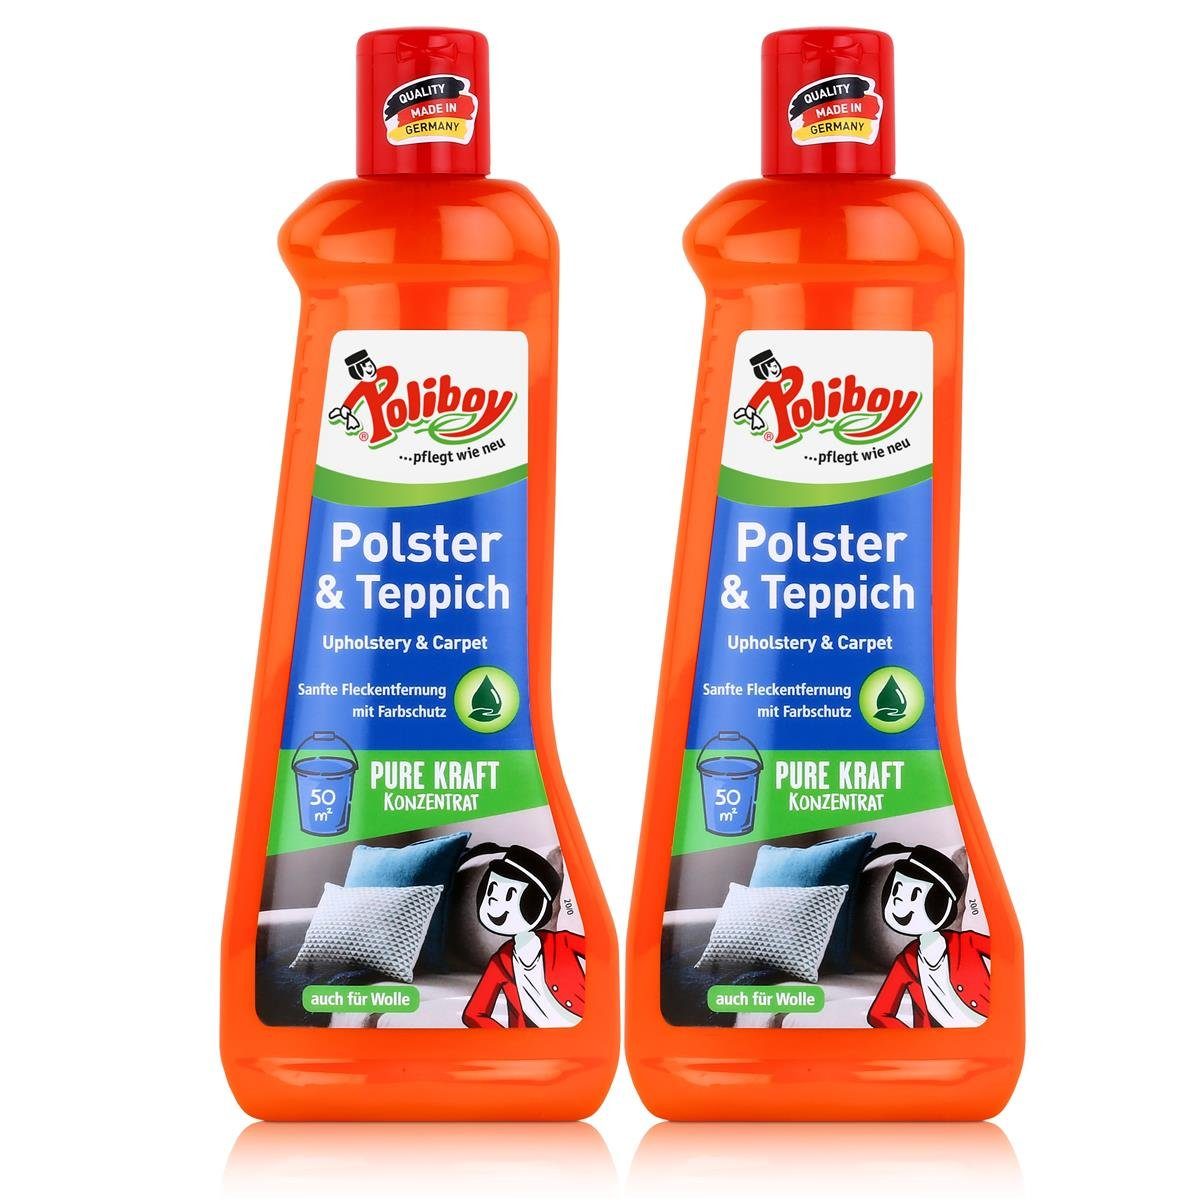 poliboy Poliboy Polster & Teppich Reiniger 500ml - Reinigt & pflegt (2er Pack) Spezialwaschmittel